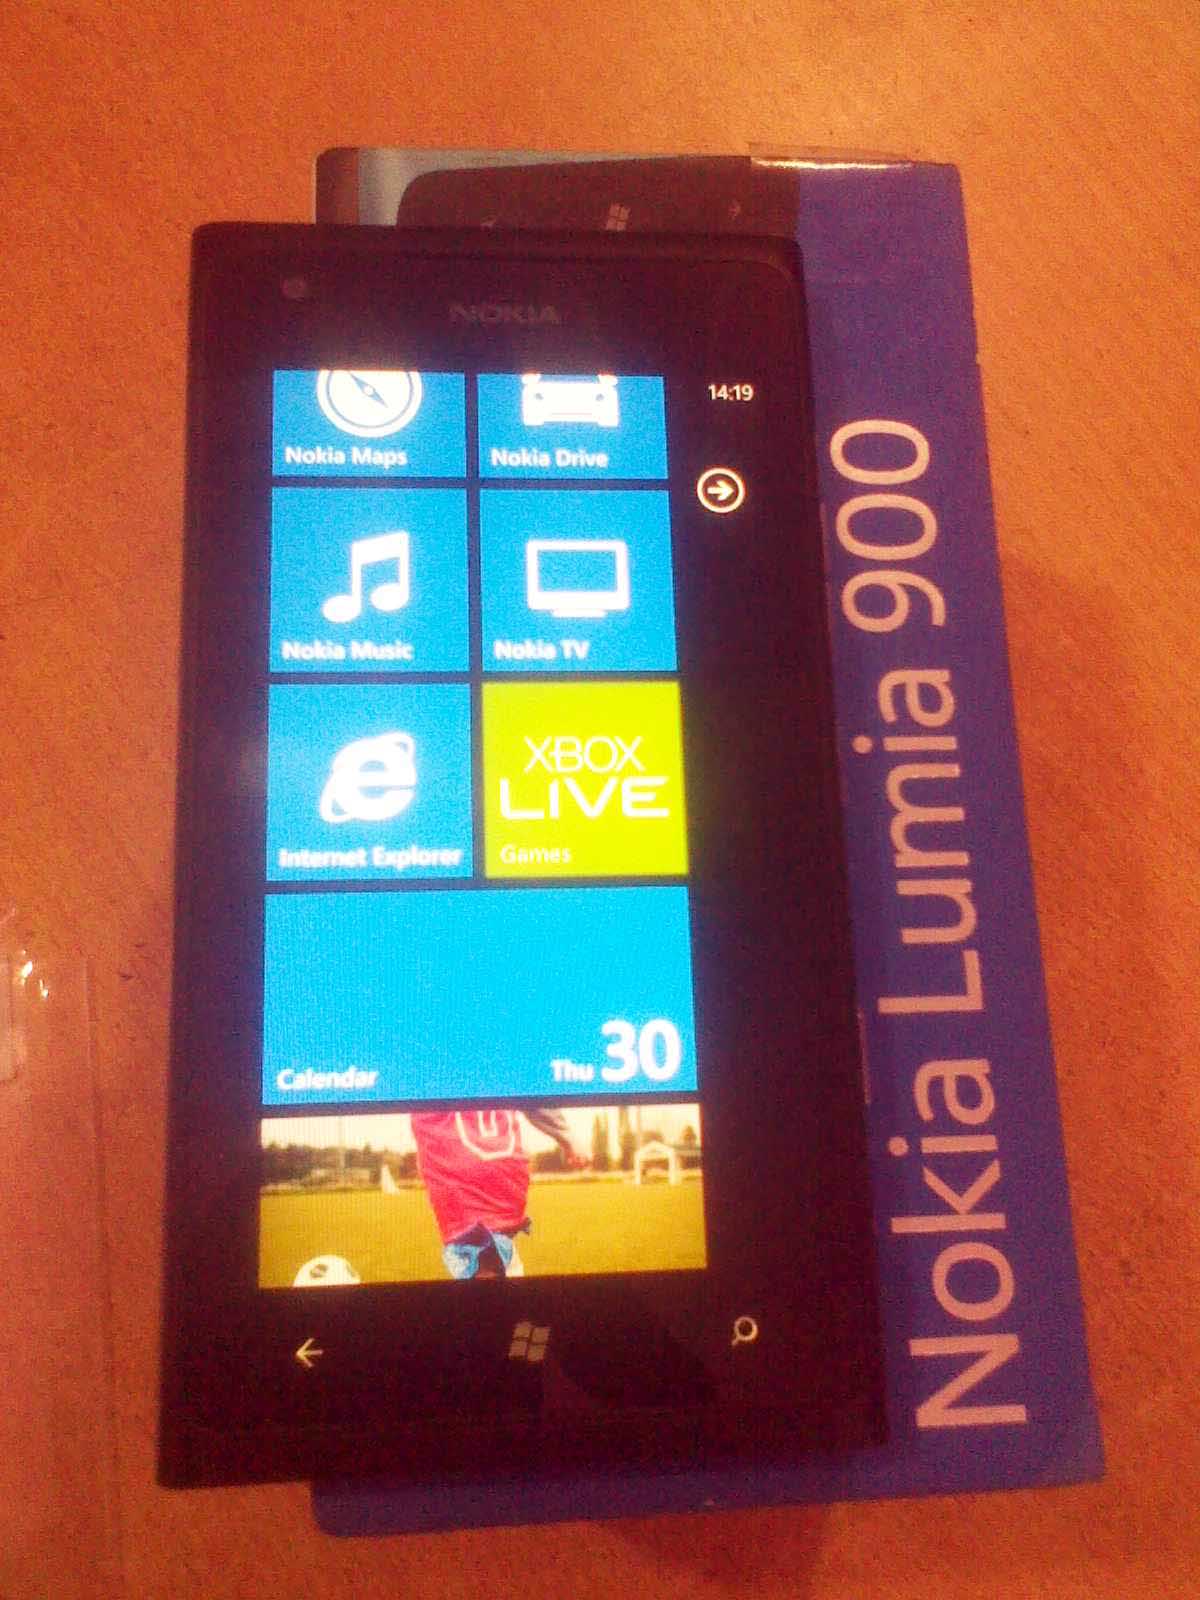 Nokia Lumia 900 call-01915556668  large image 0